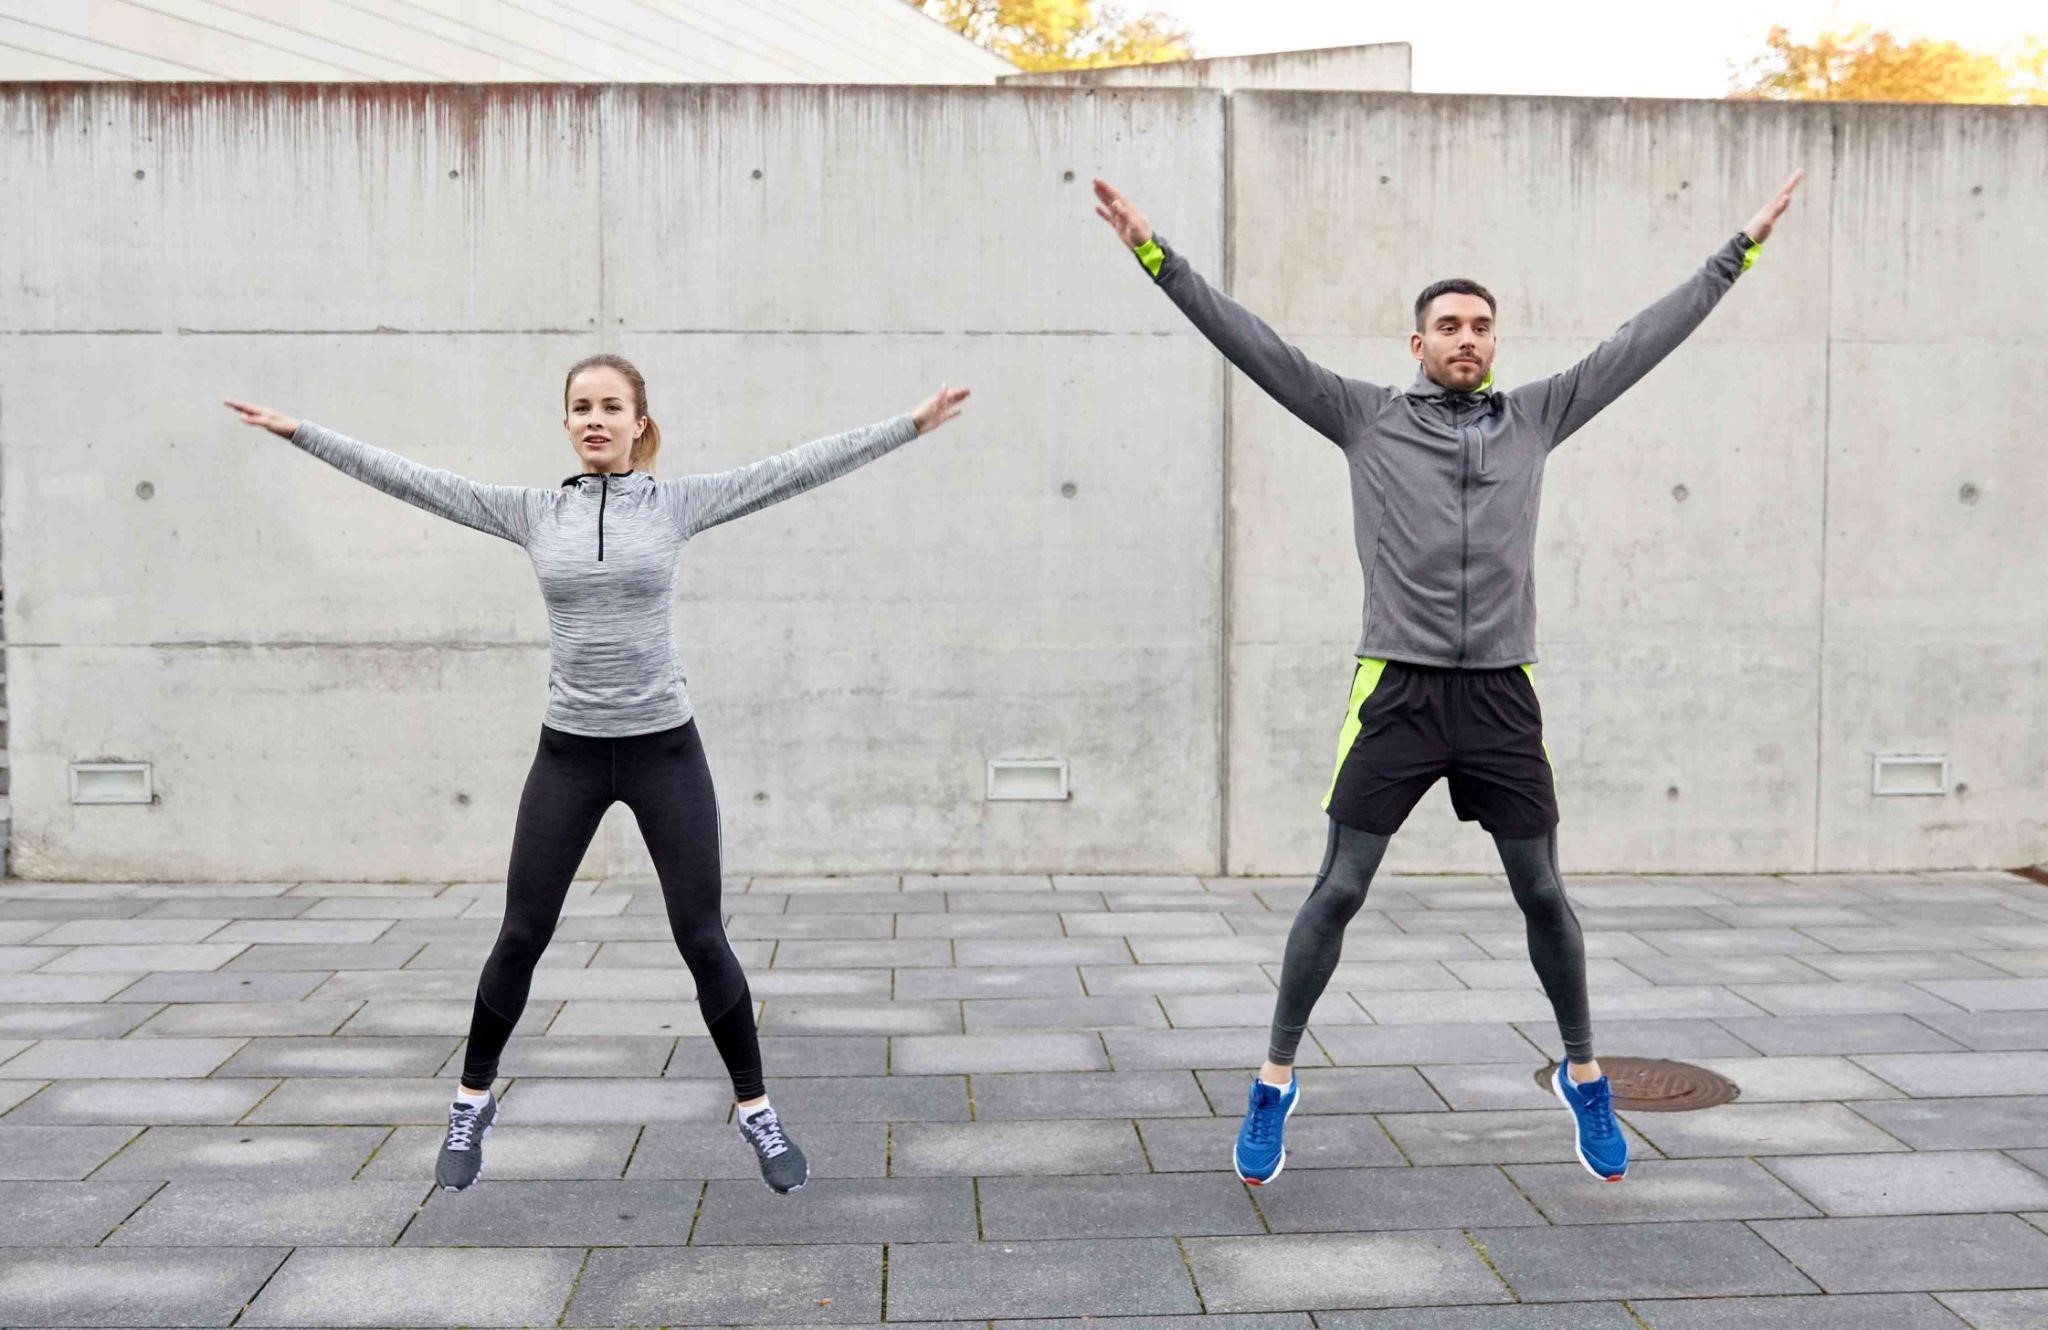 Động tác bật nhảy dang tay chân sẽ giải phóng năng lượng của cơ thể